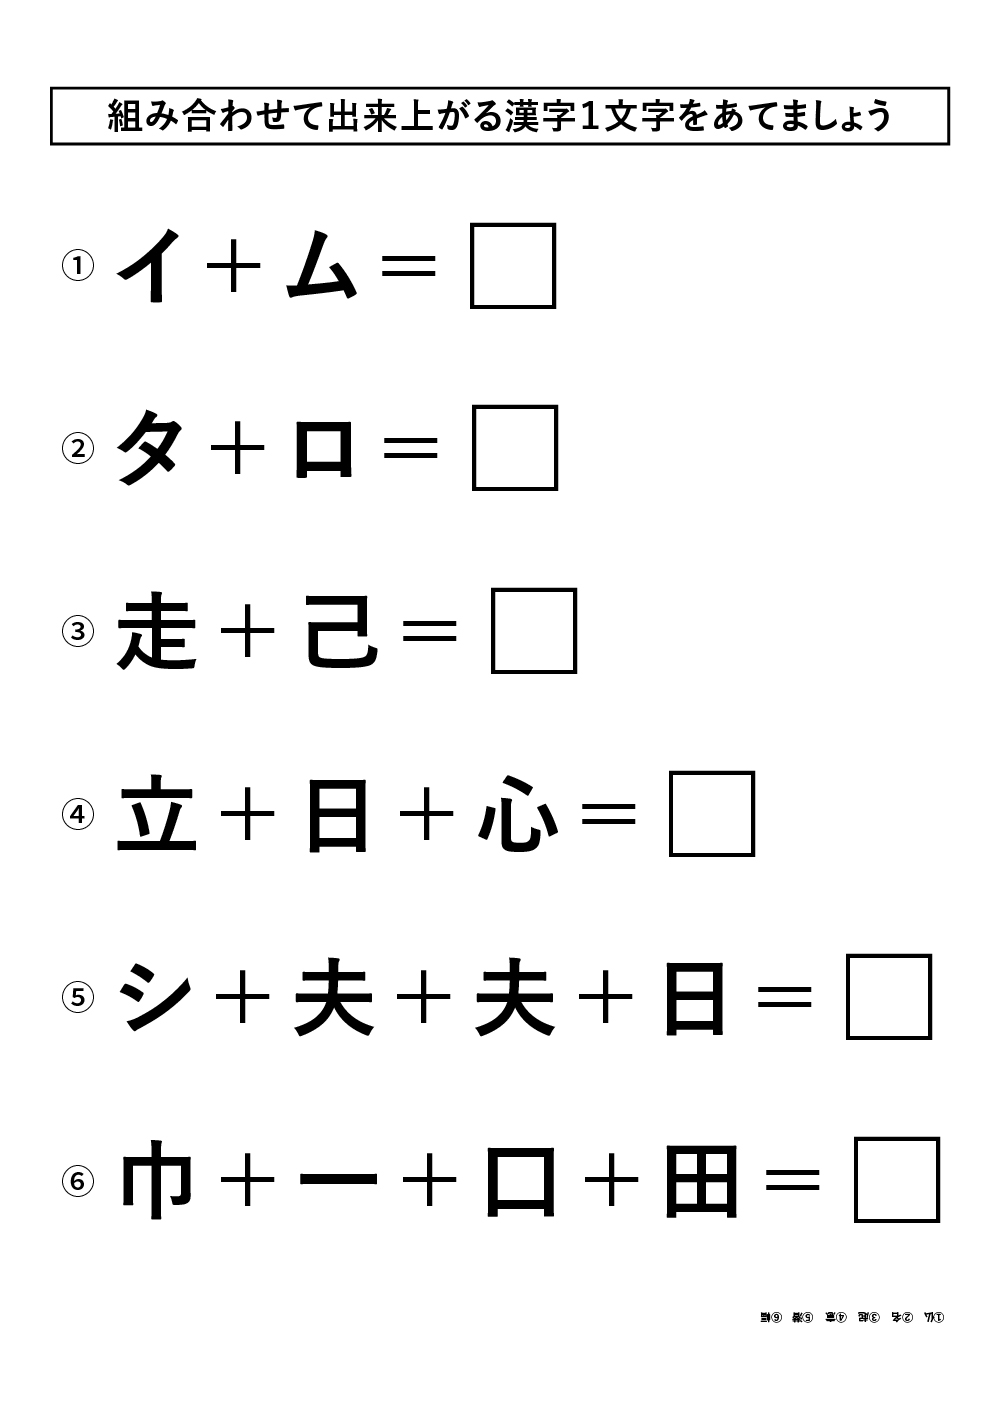 レク素材 漢字クイズ 介護レク広場 レク素材やレクネタ 企画書 の無料ダウンロード